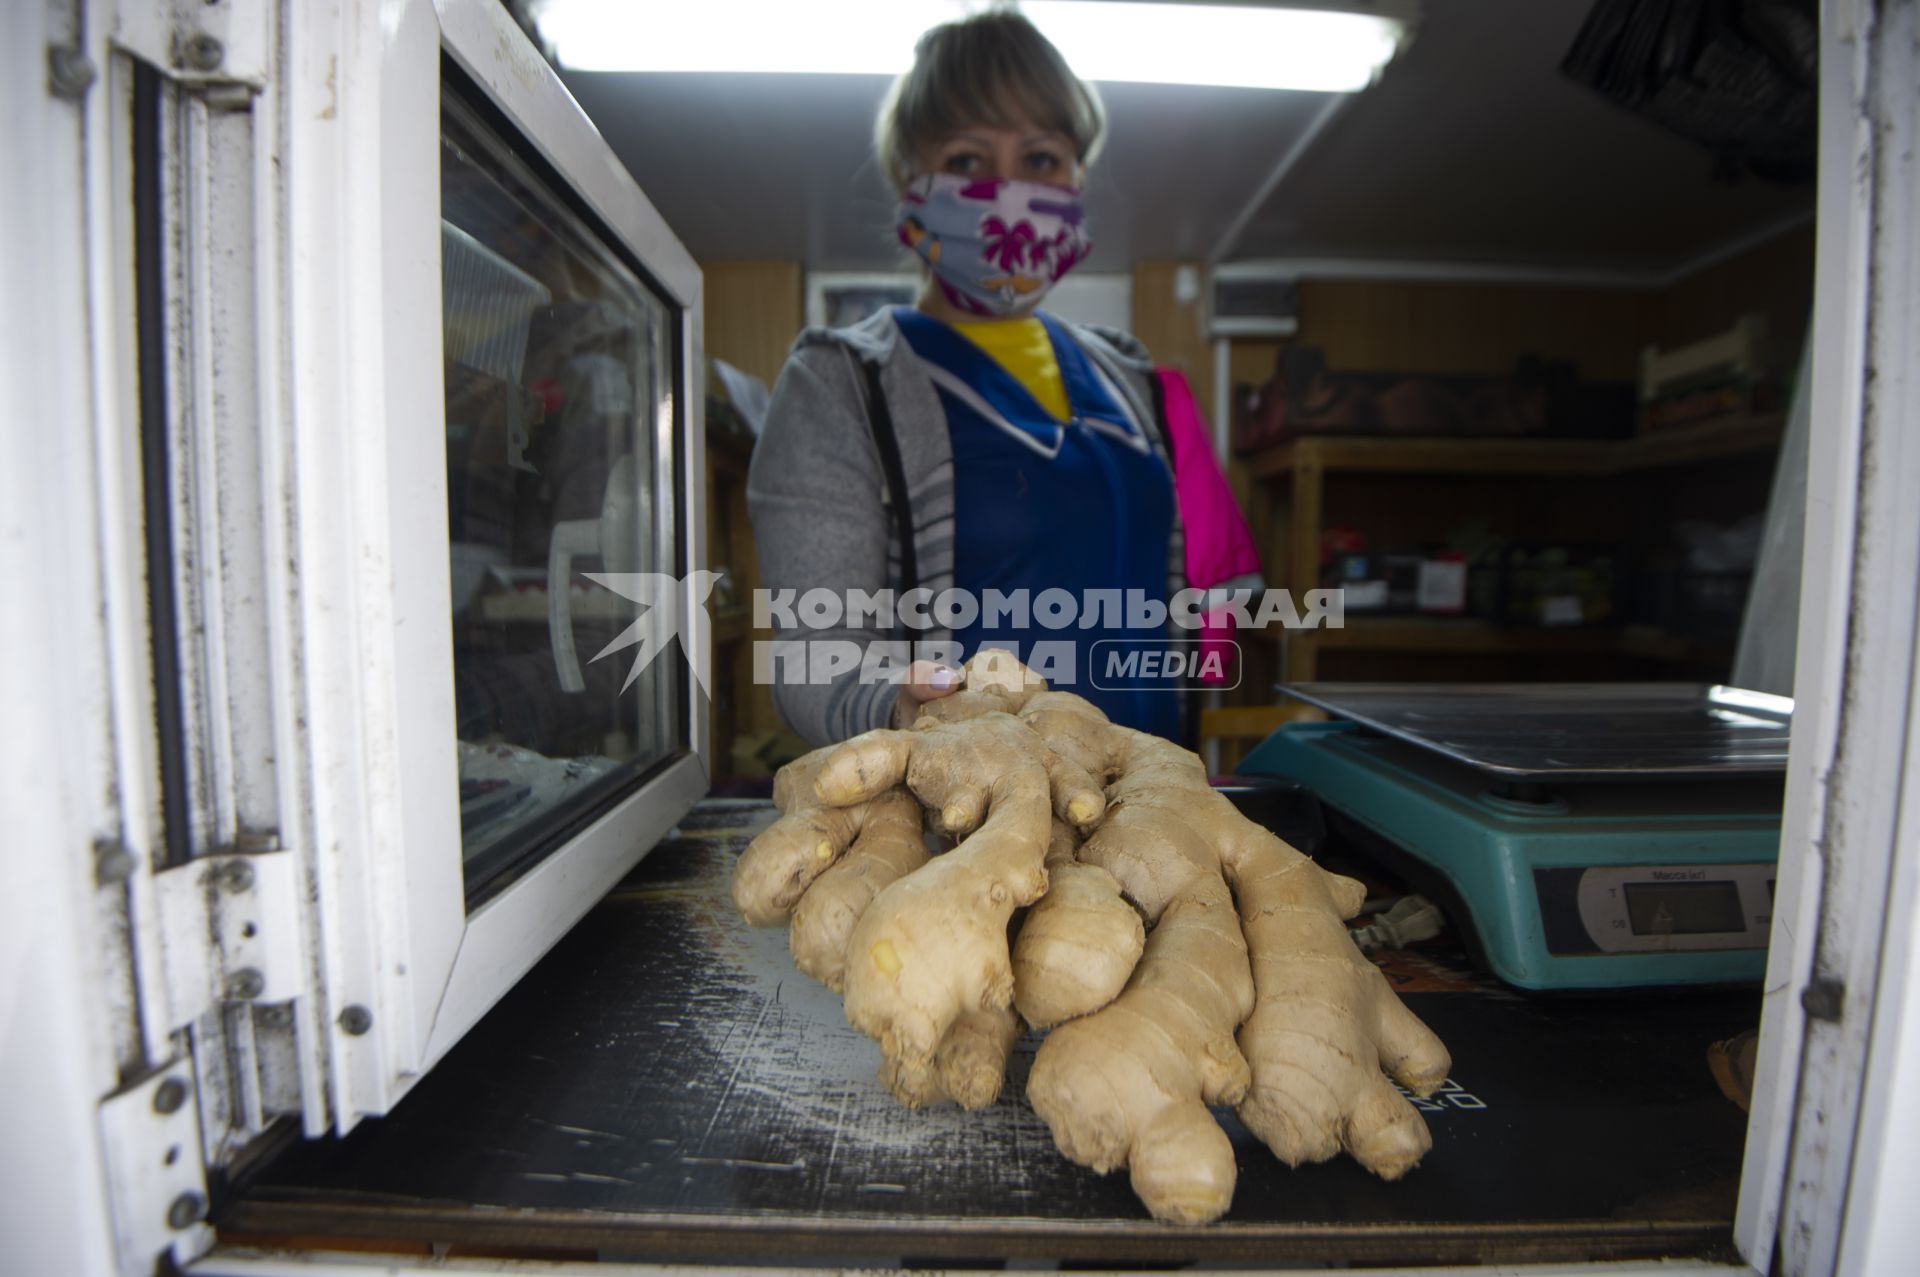 Екатеринбург. Продавщица в медицинской маске показывает корень имбиря во время эпидемии коронавирусной инфекции COVID-19